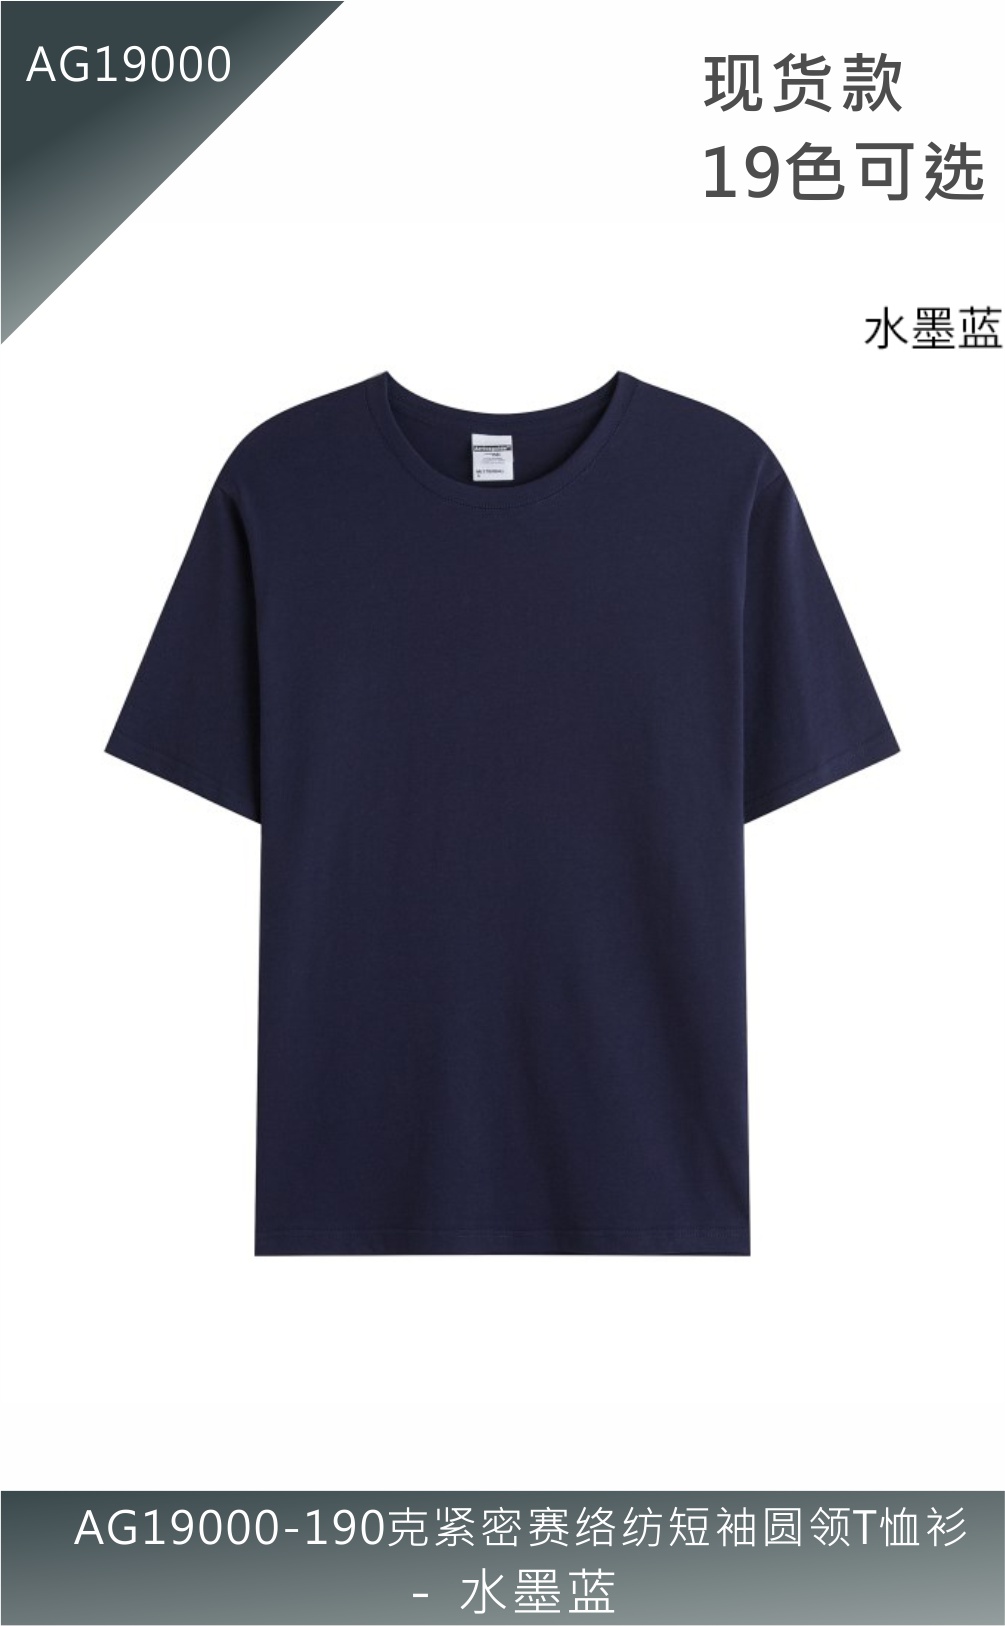 AG19000-190克紧密赛络纺短袖圆领T恤衫